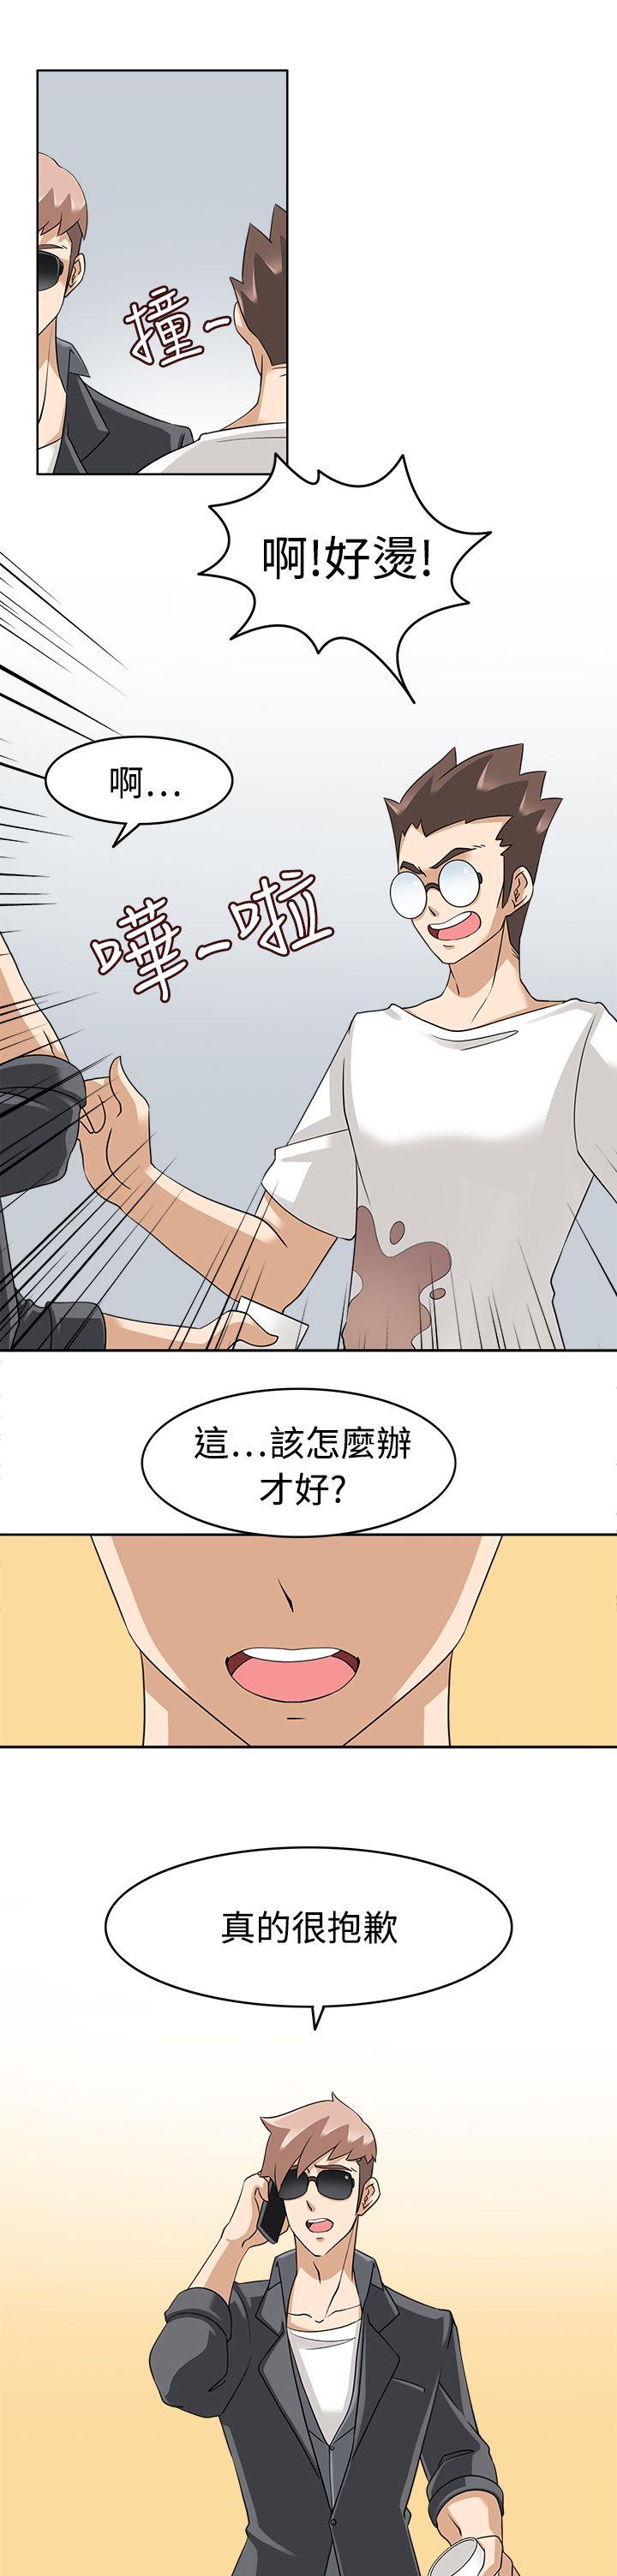 韩国污漫画 軍人的誘惑 第17话 7